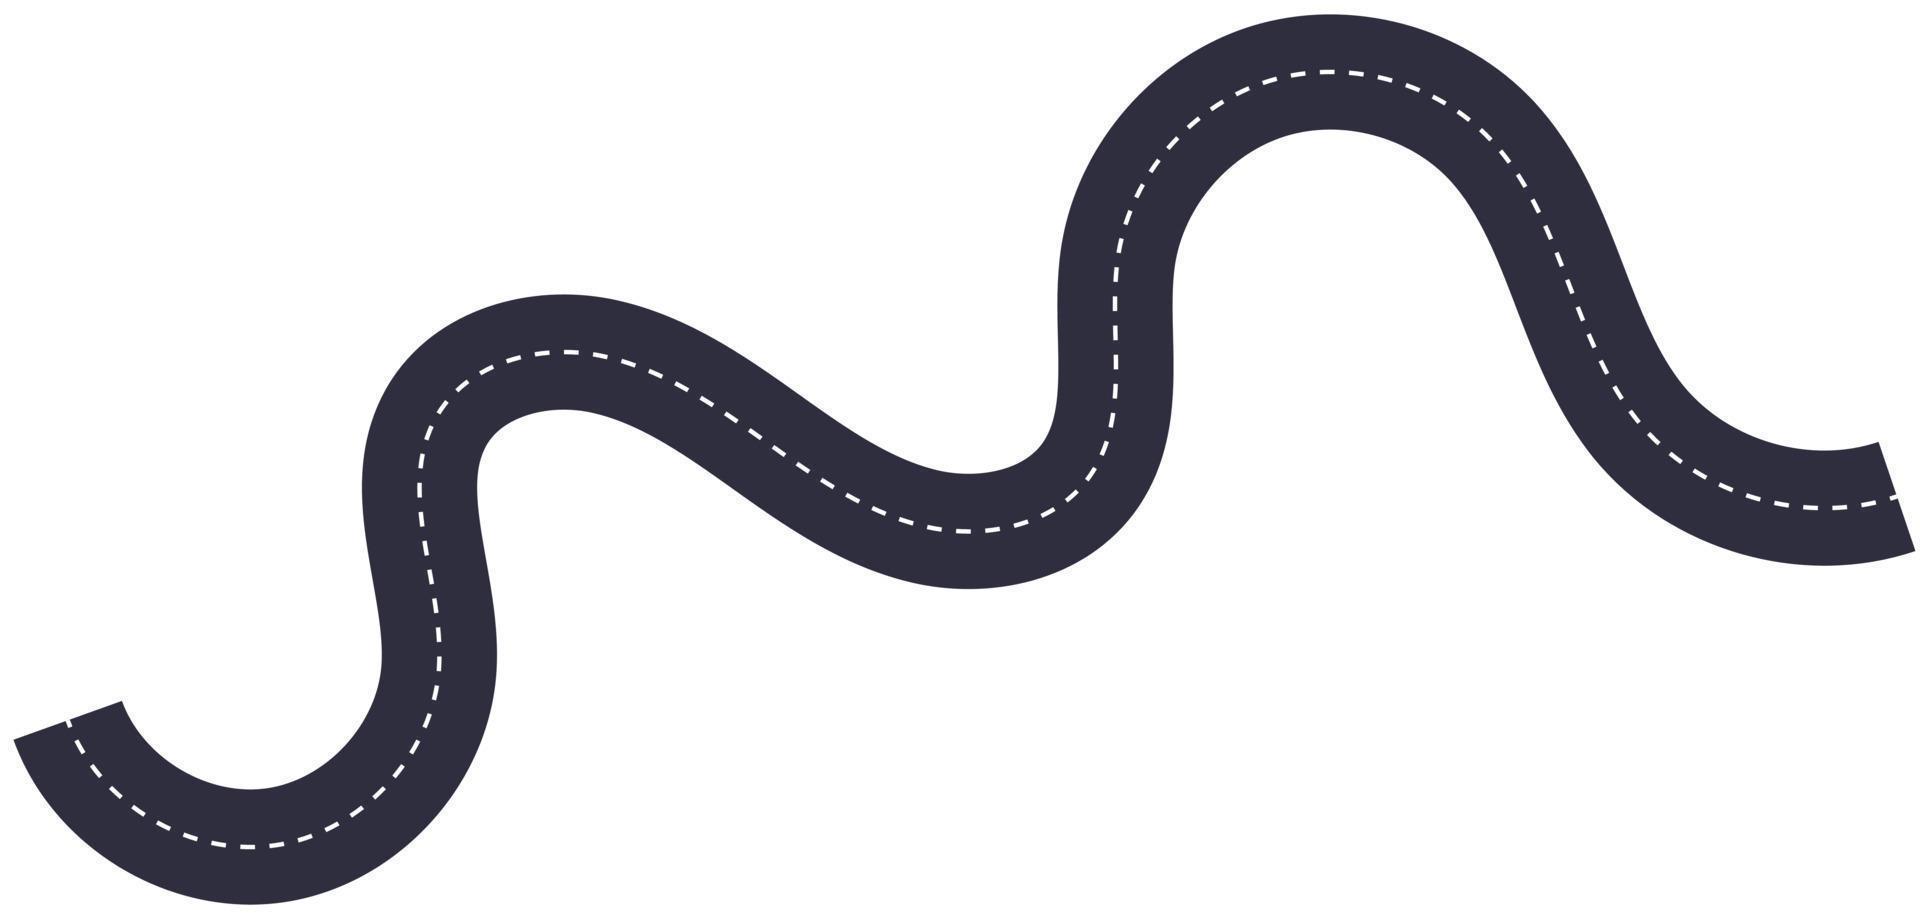 kurvig böja asfalten väg symbol illustration vektor